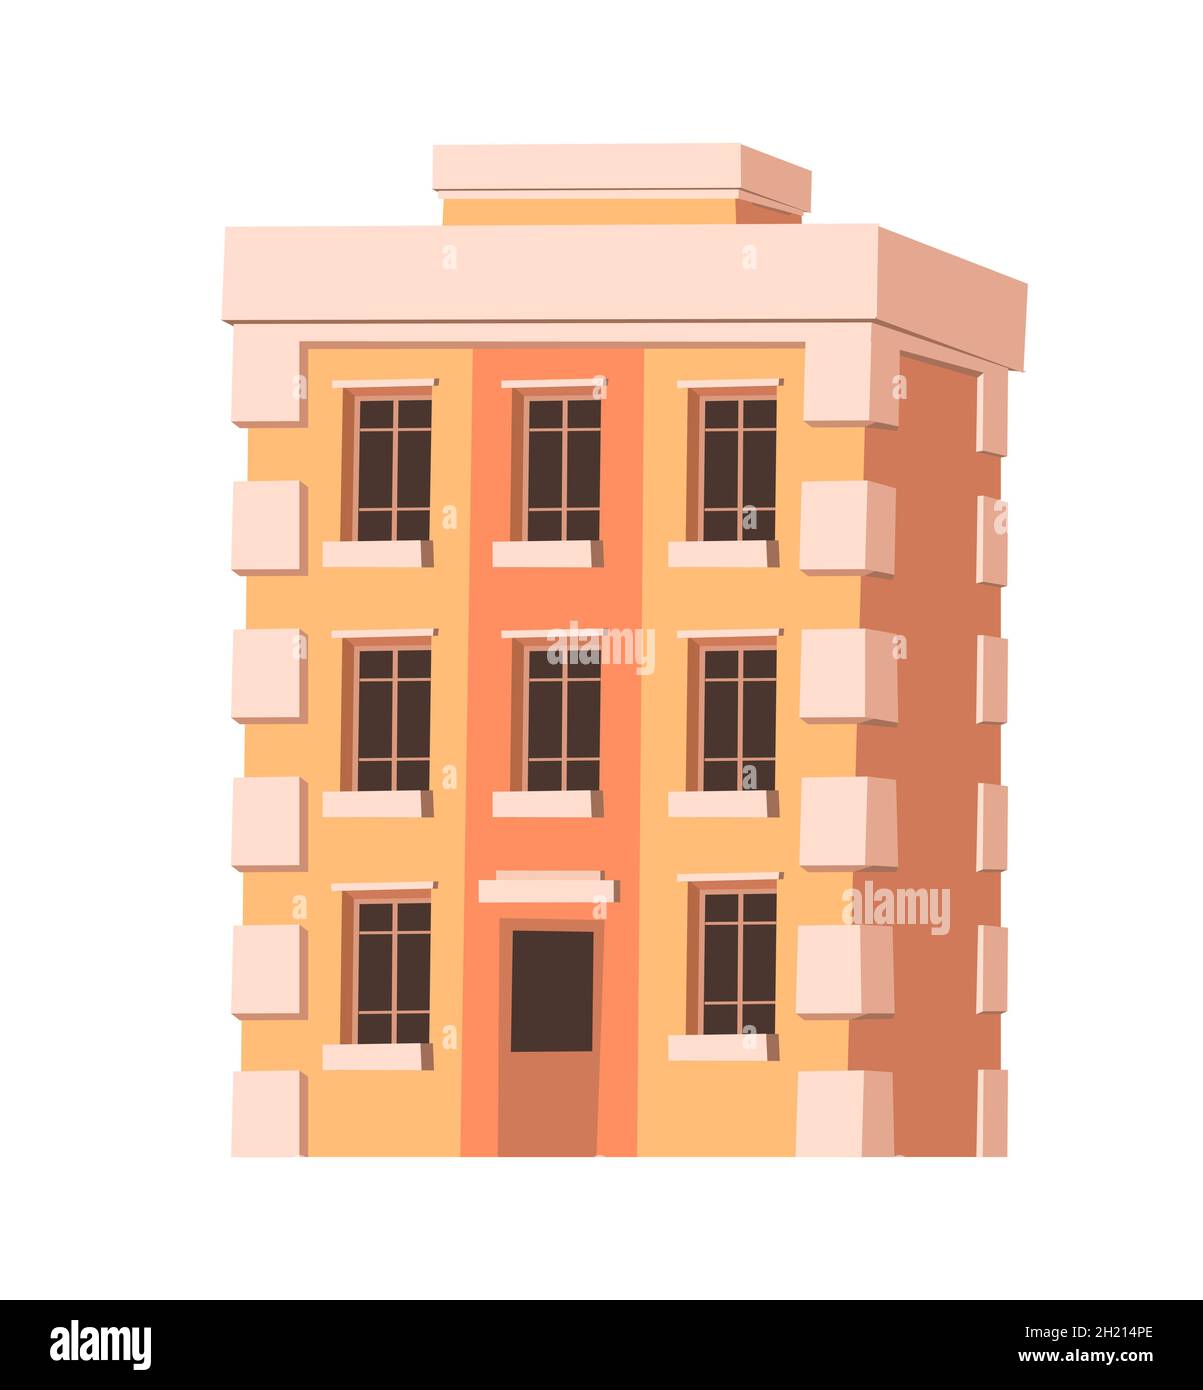 Claccic City Building. Cartoon-Spaß flach Stil. Isoliert auf weißem Hintergrund. Wohngebäude mit Fenstern. Vektor. Stock Vektor